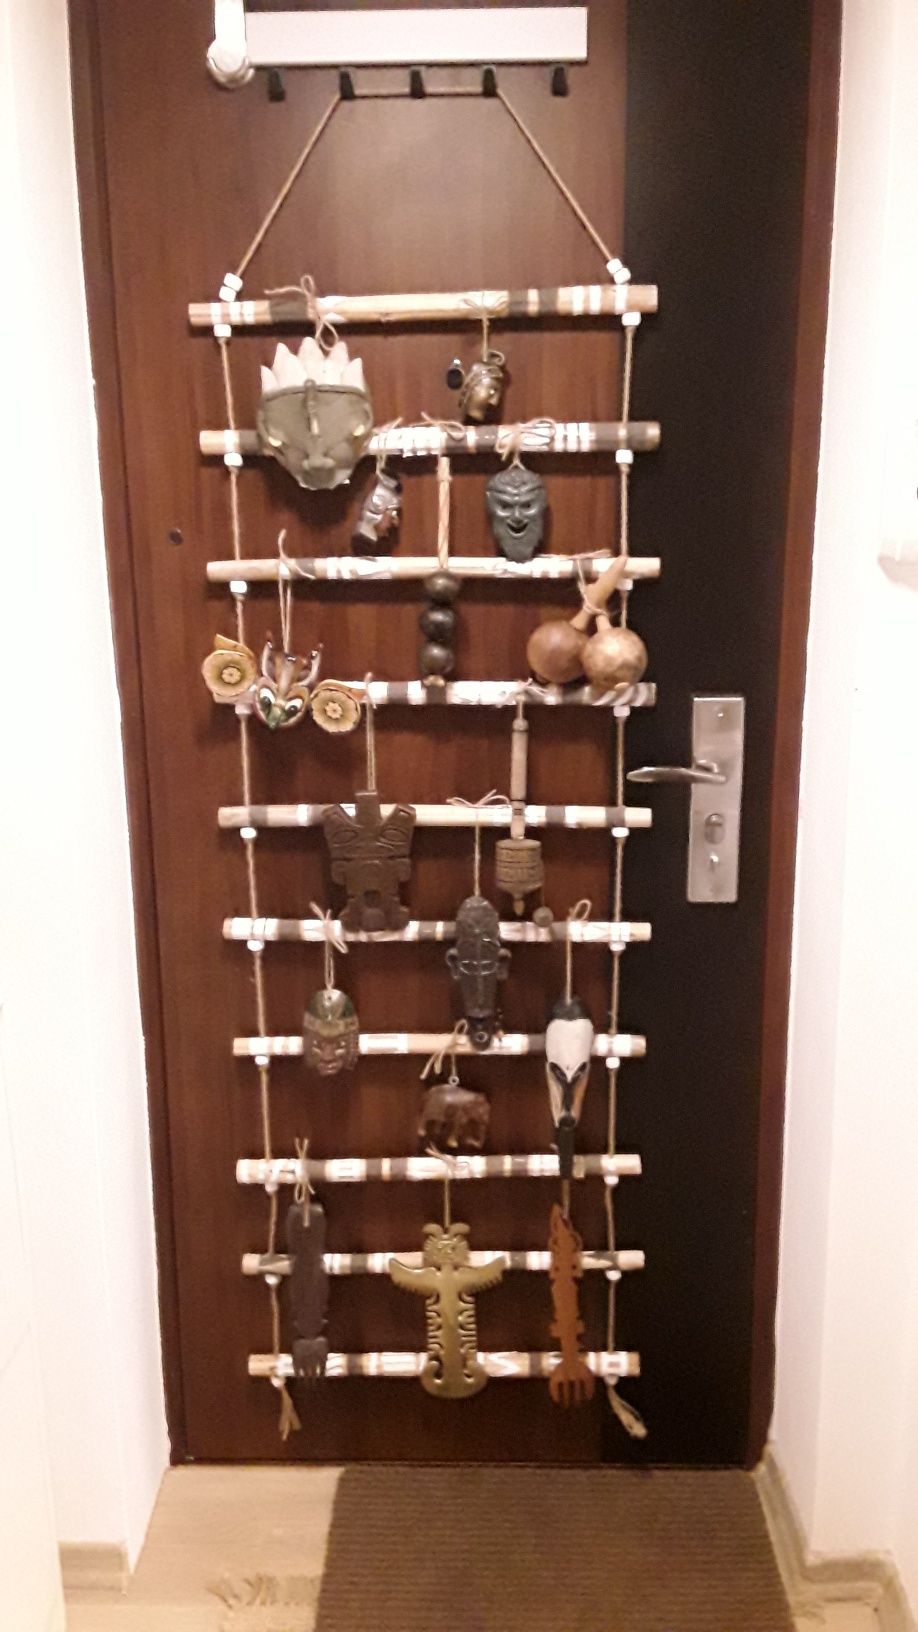 suport din lemn (150 cm) decorat cu masti si obiecte decorative